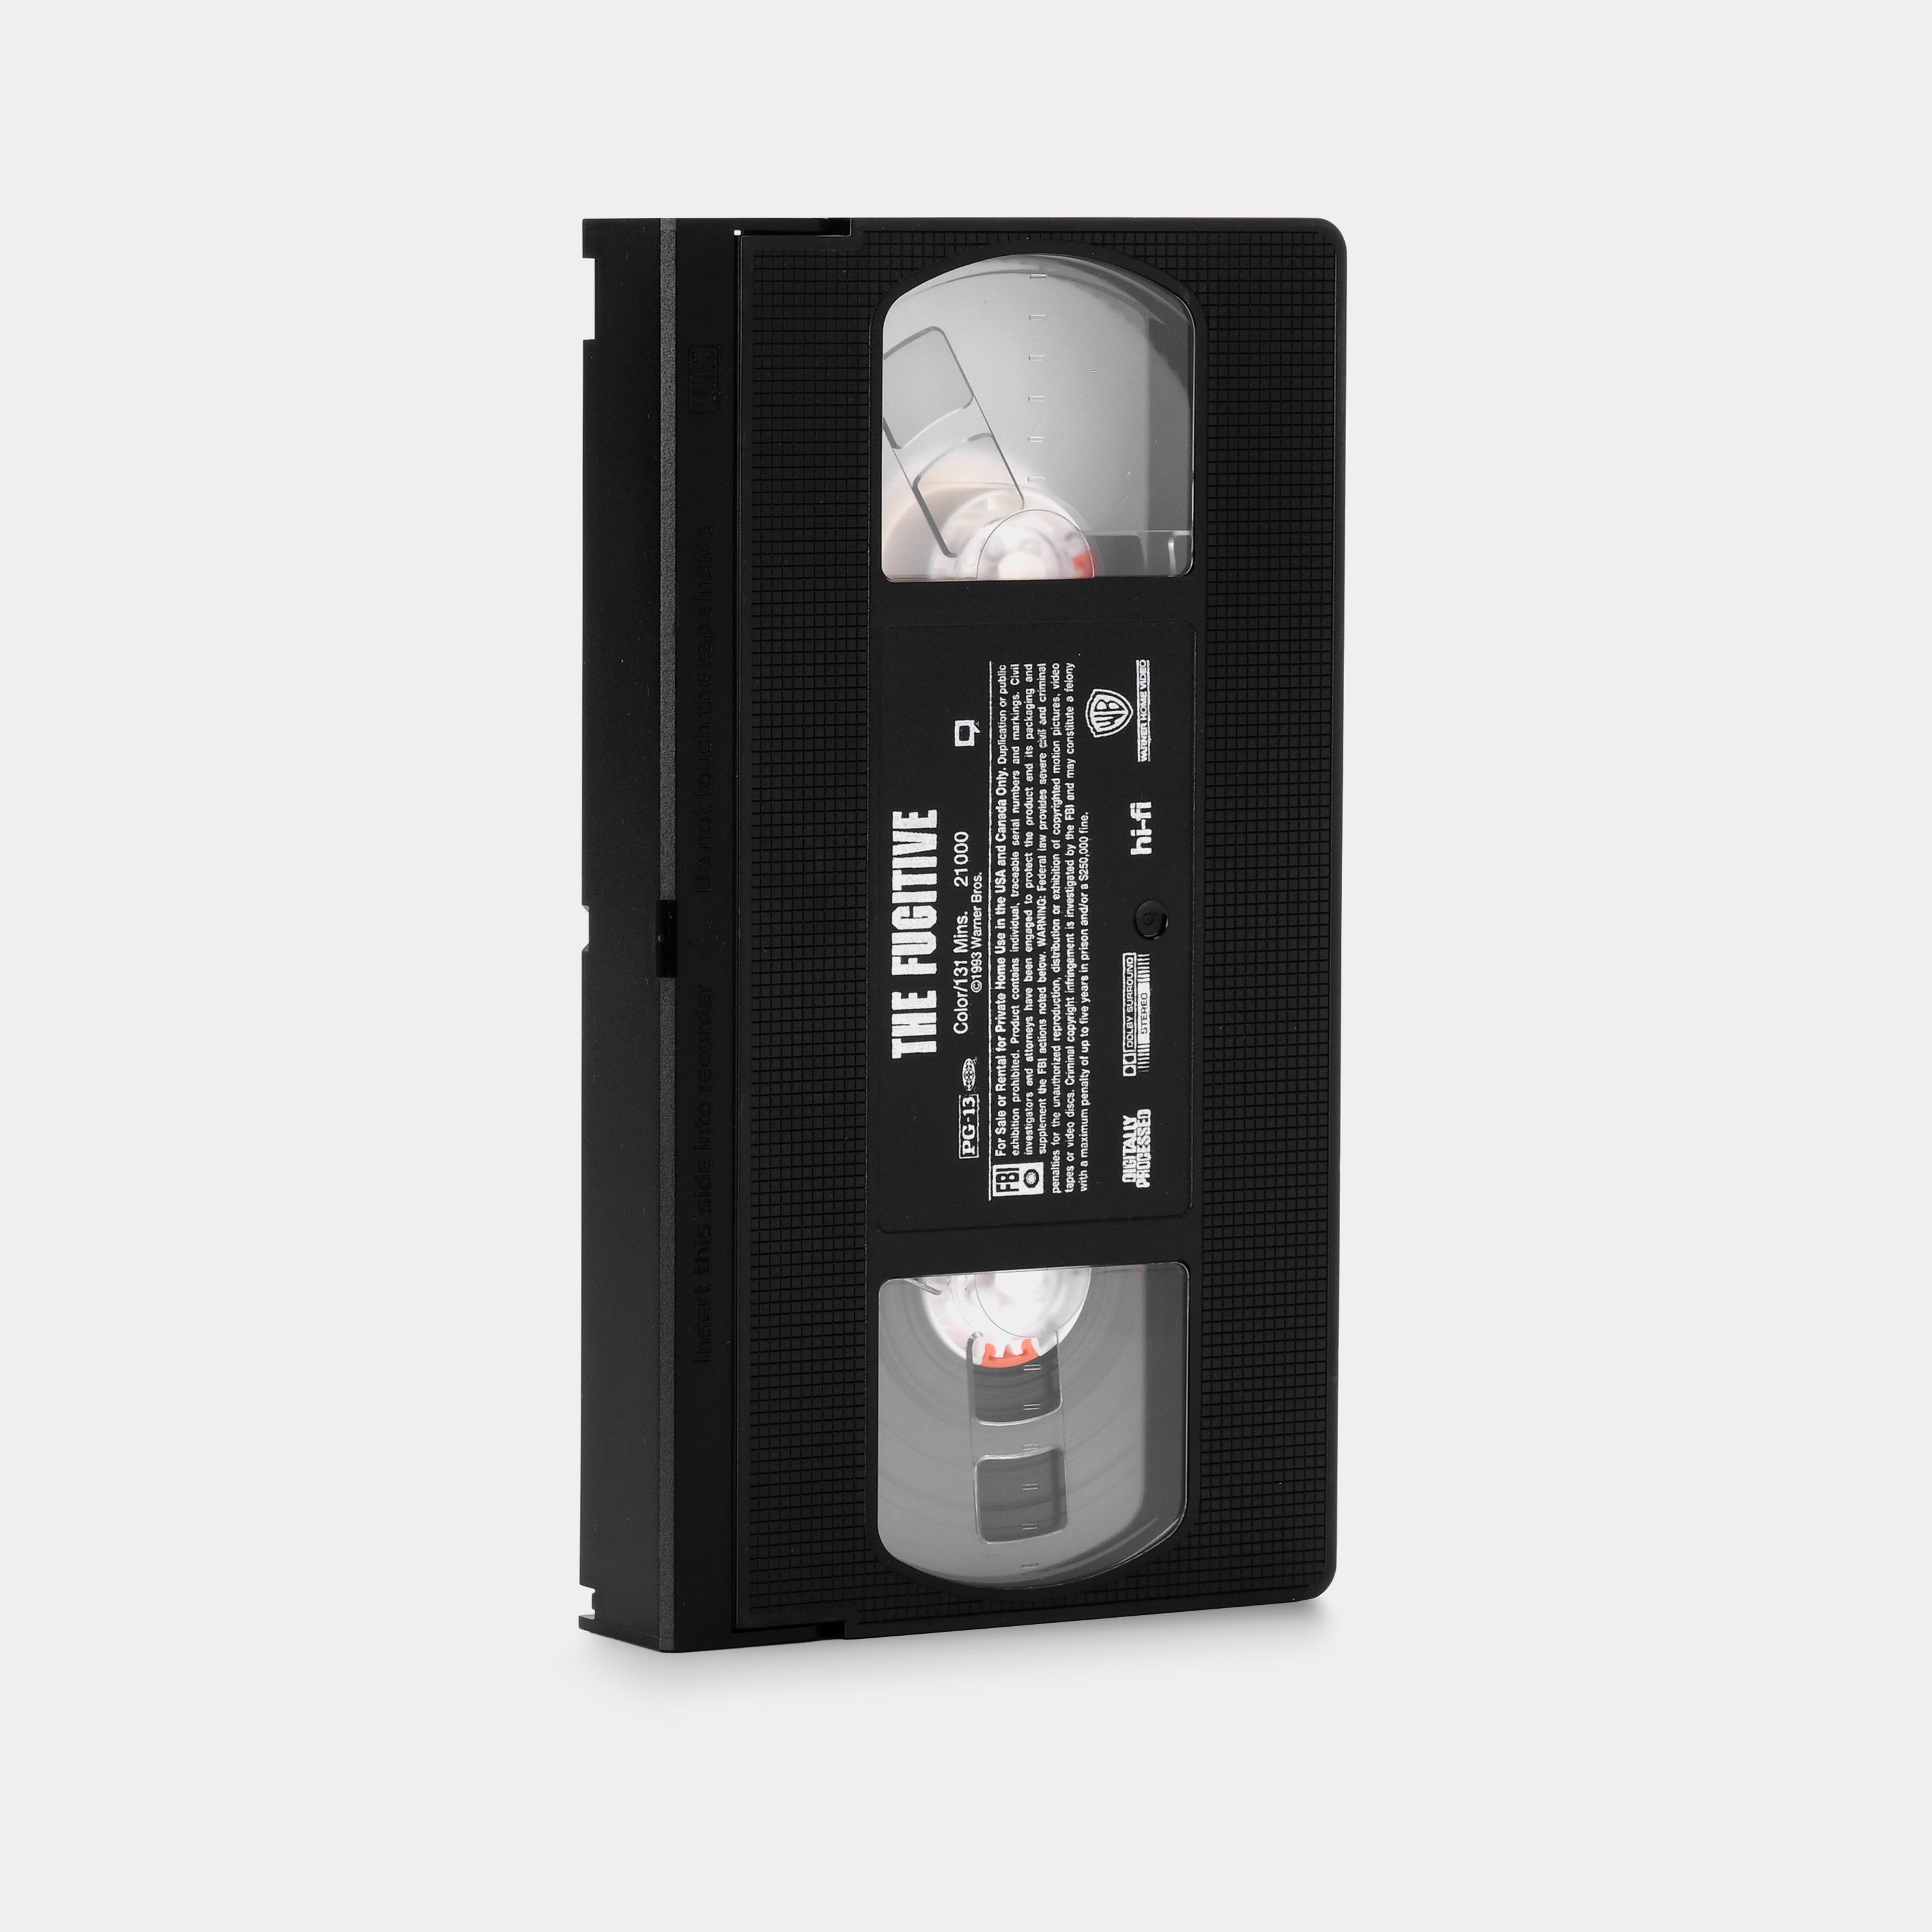 The Fugitive VHS Tape